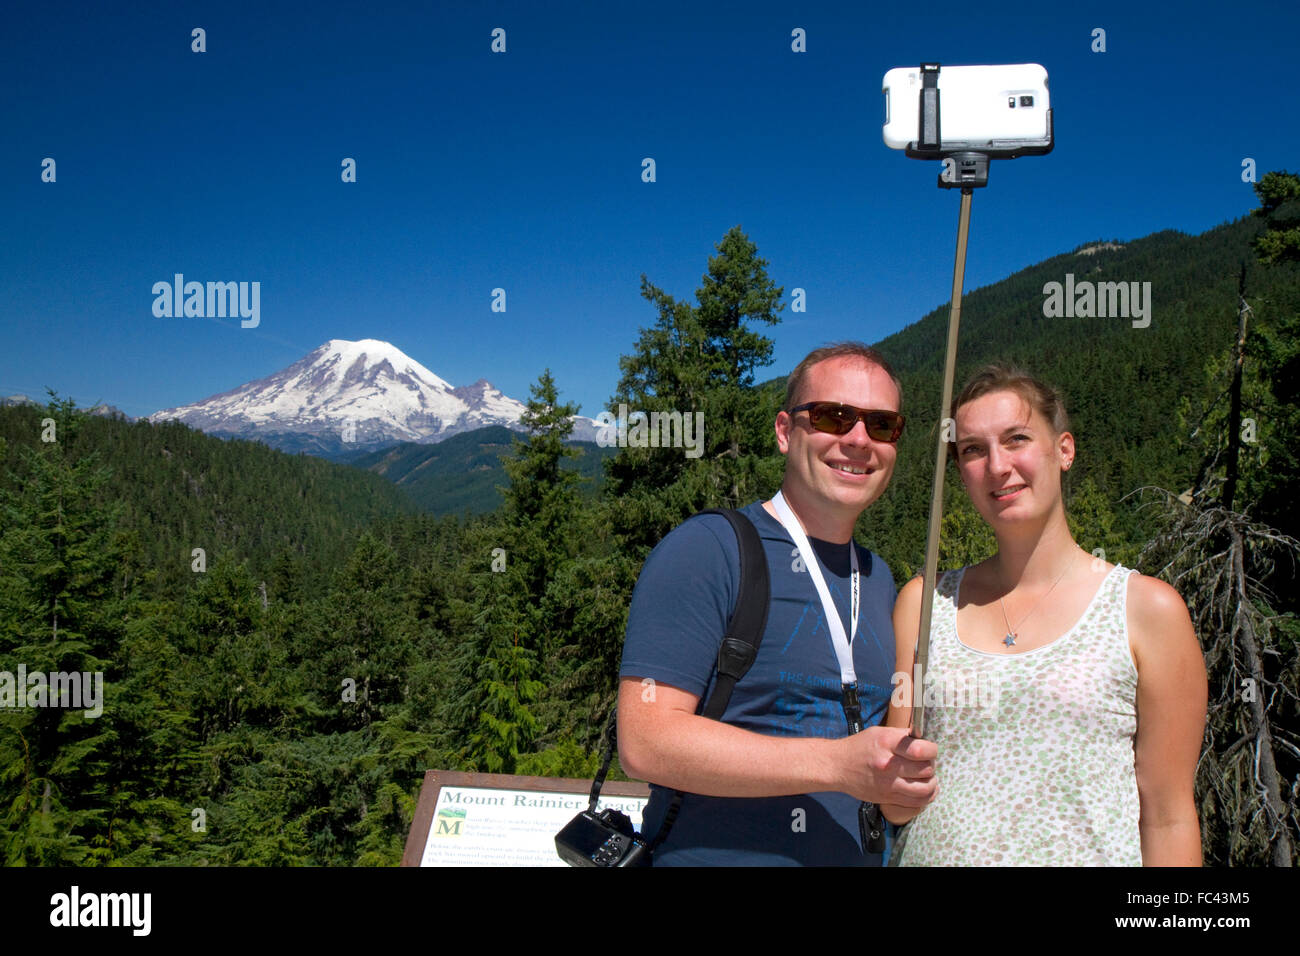 Turisti usano un selfie stick per prendere un selfie con uno smart phone a monte Rainier nello stato di Washington, USA. Foto Stock